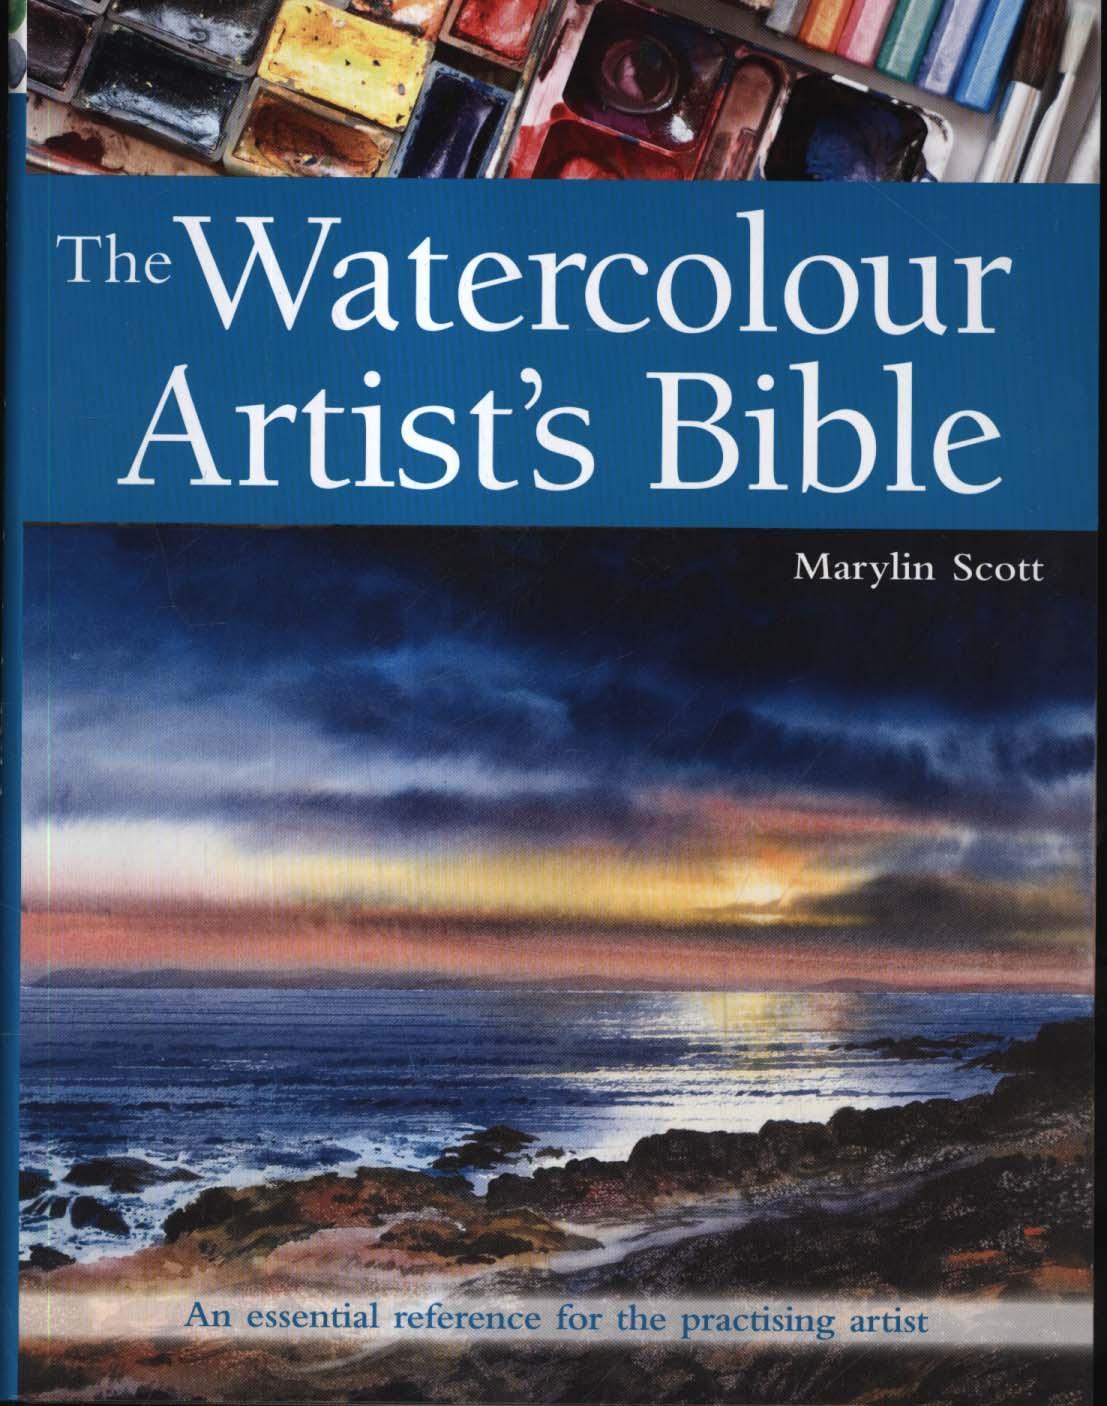 Watercolour Artist's Bible